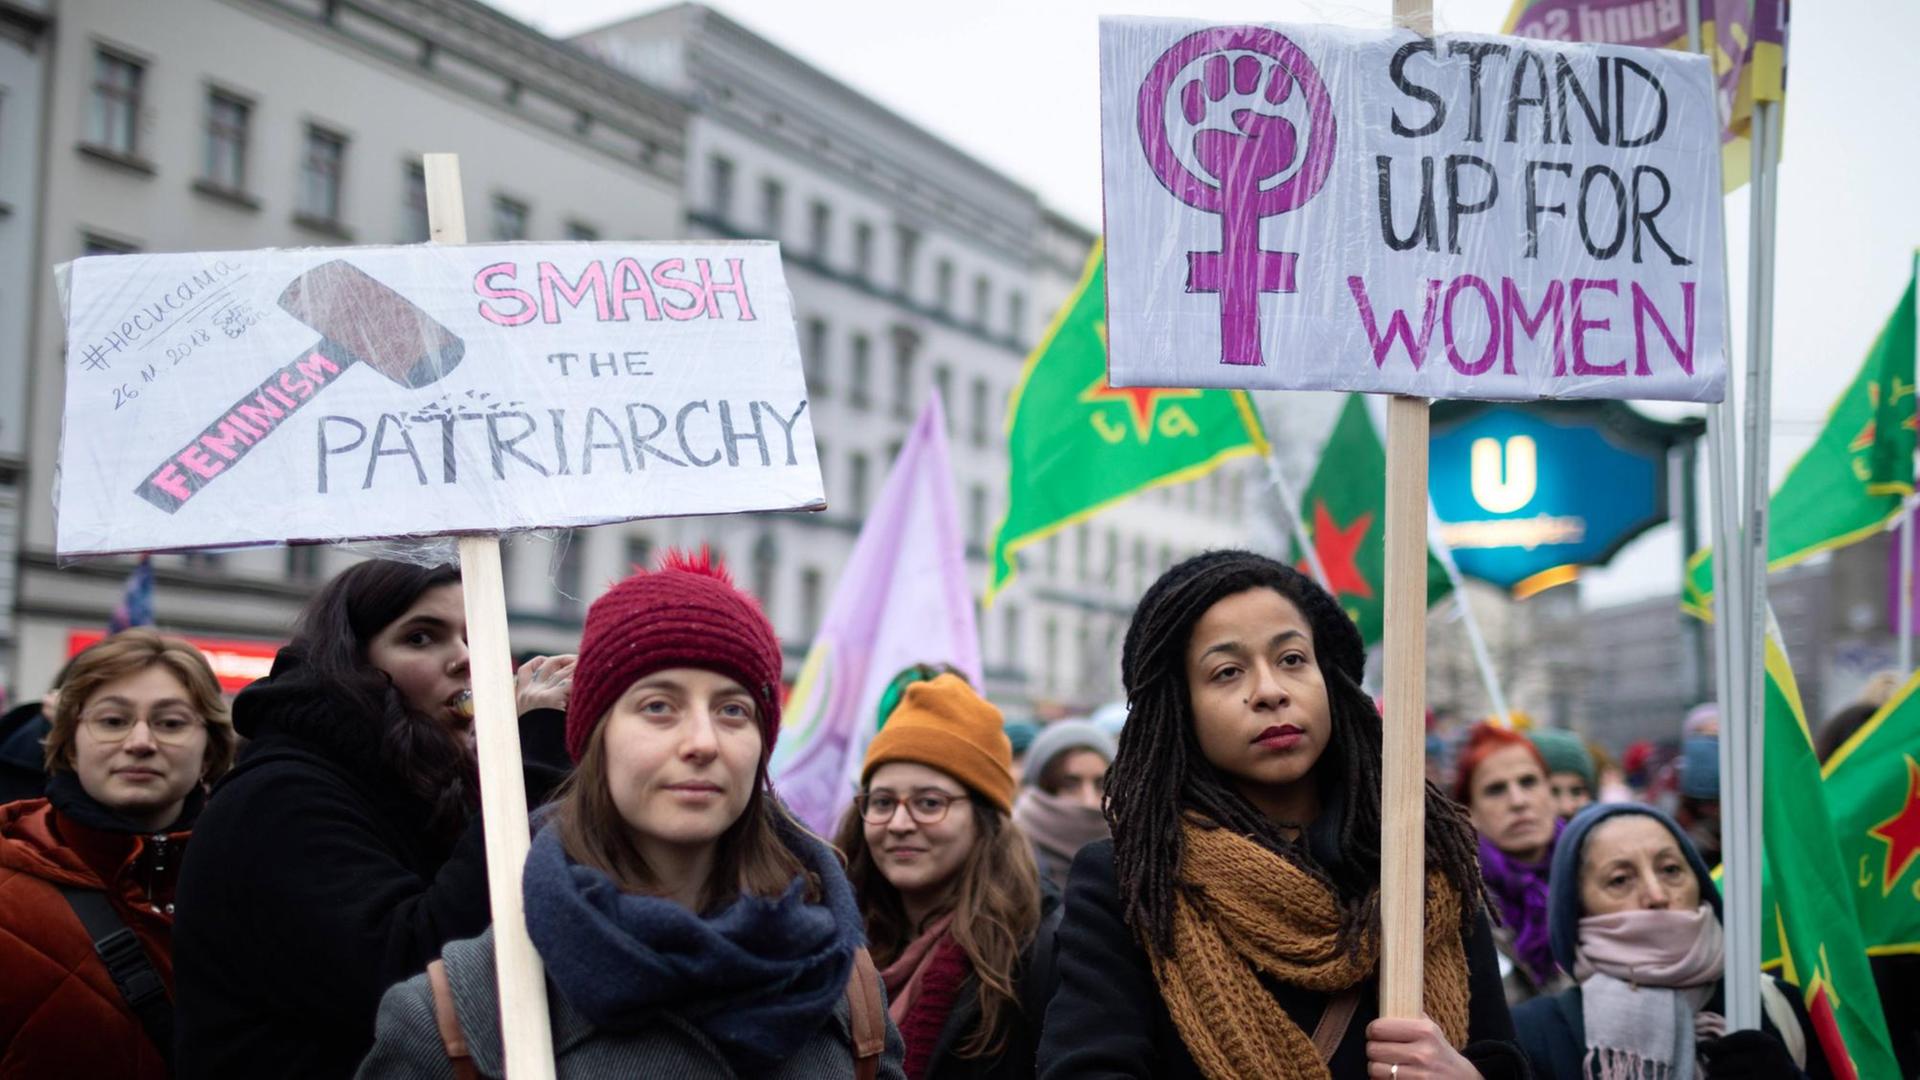 Zwei Frauen halten Plakate, auf denen steht "Smash the Patriarchy" und "Stand up for Women"